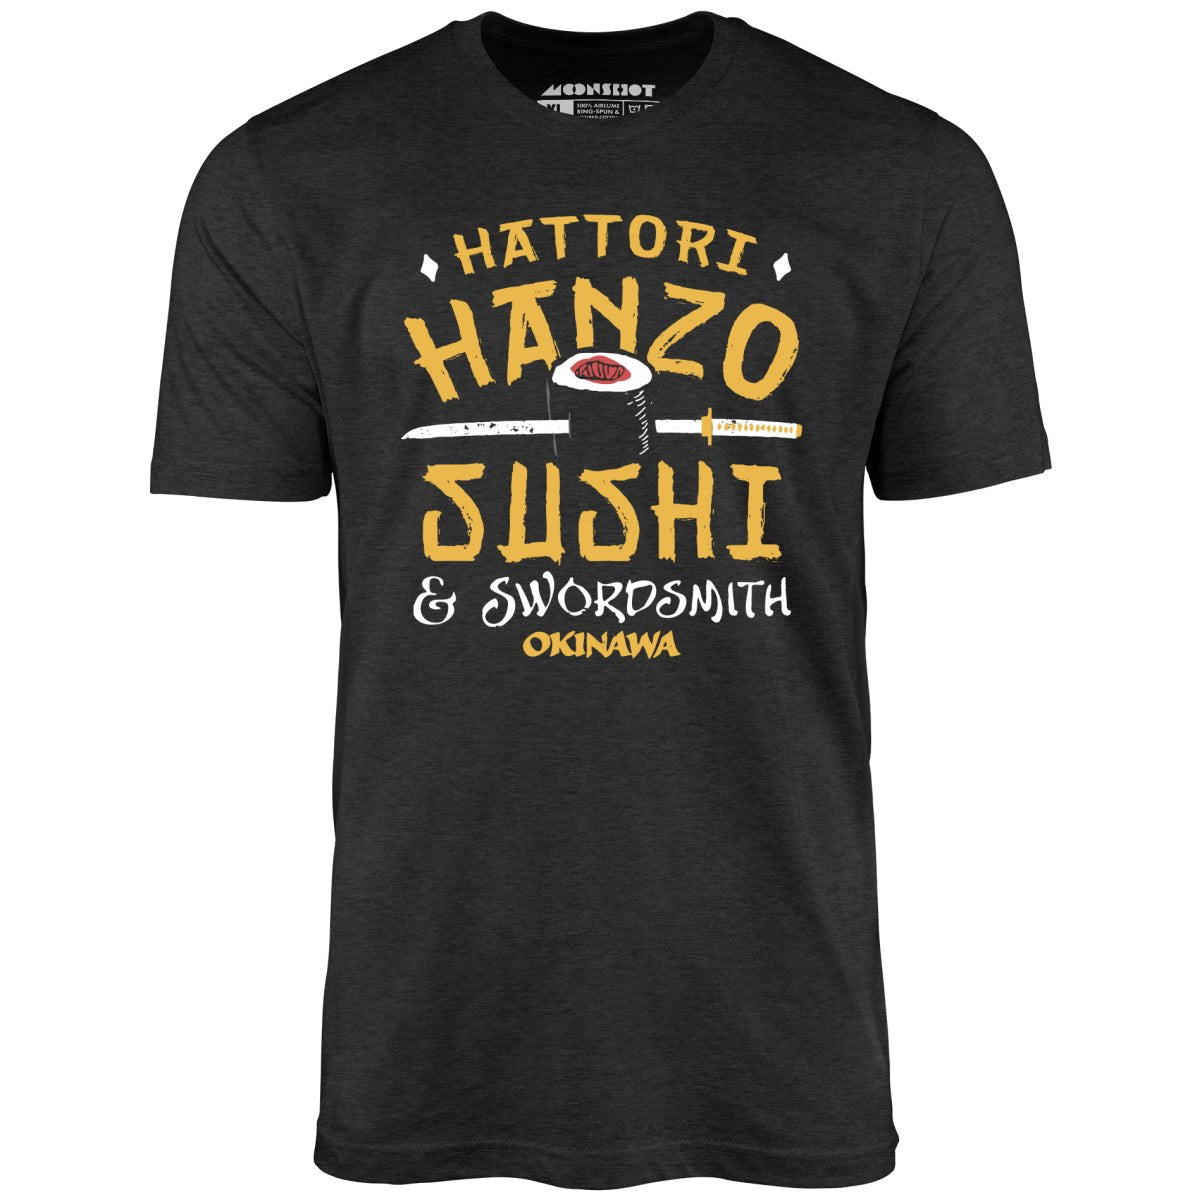 Hattori Hanzo Sushi & Swordsmith - Unisex T-Shirt